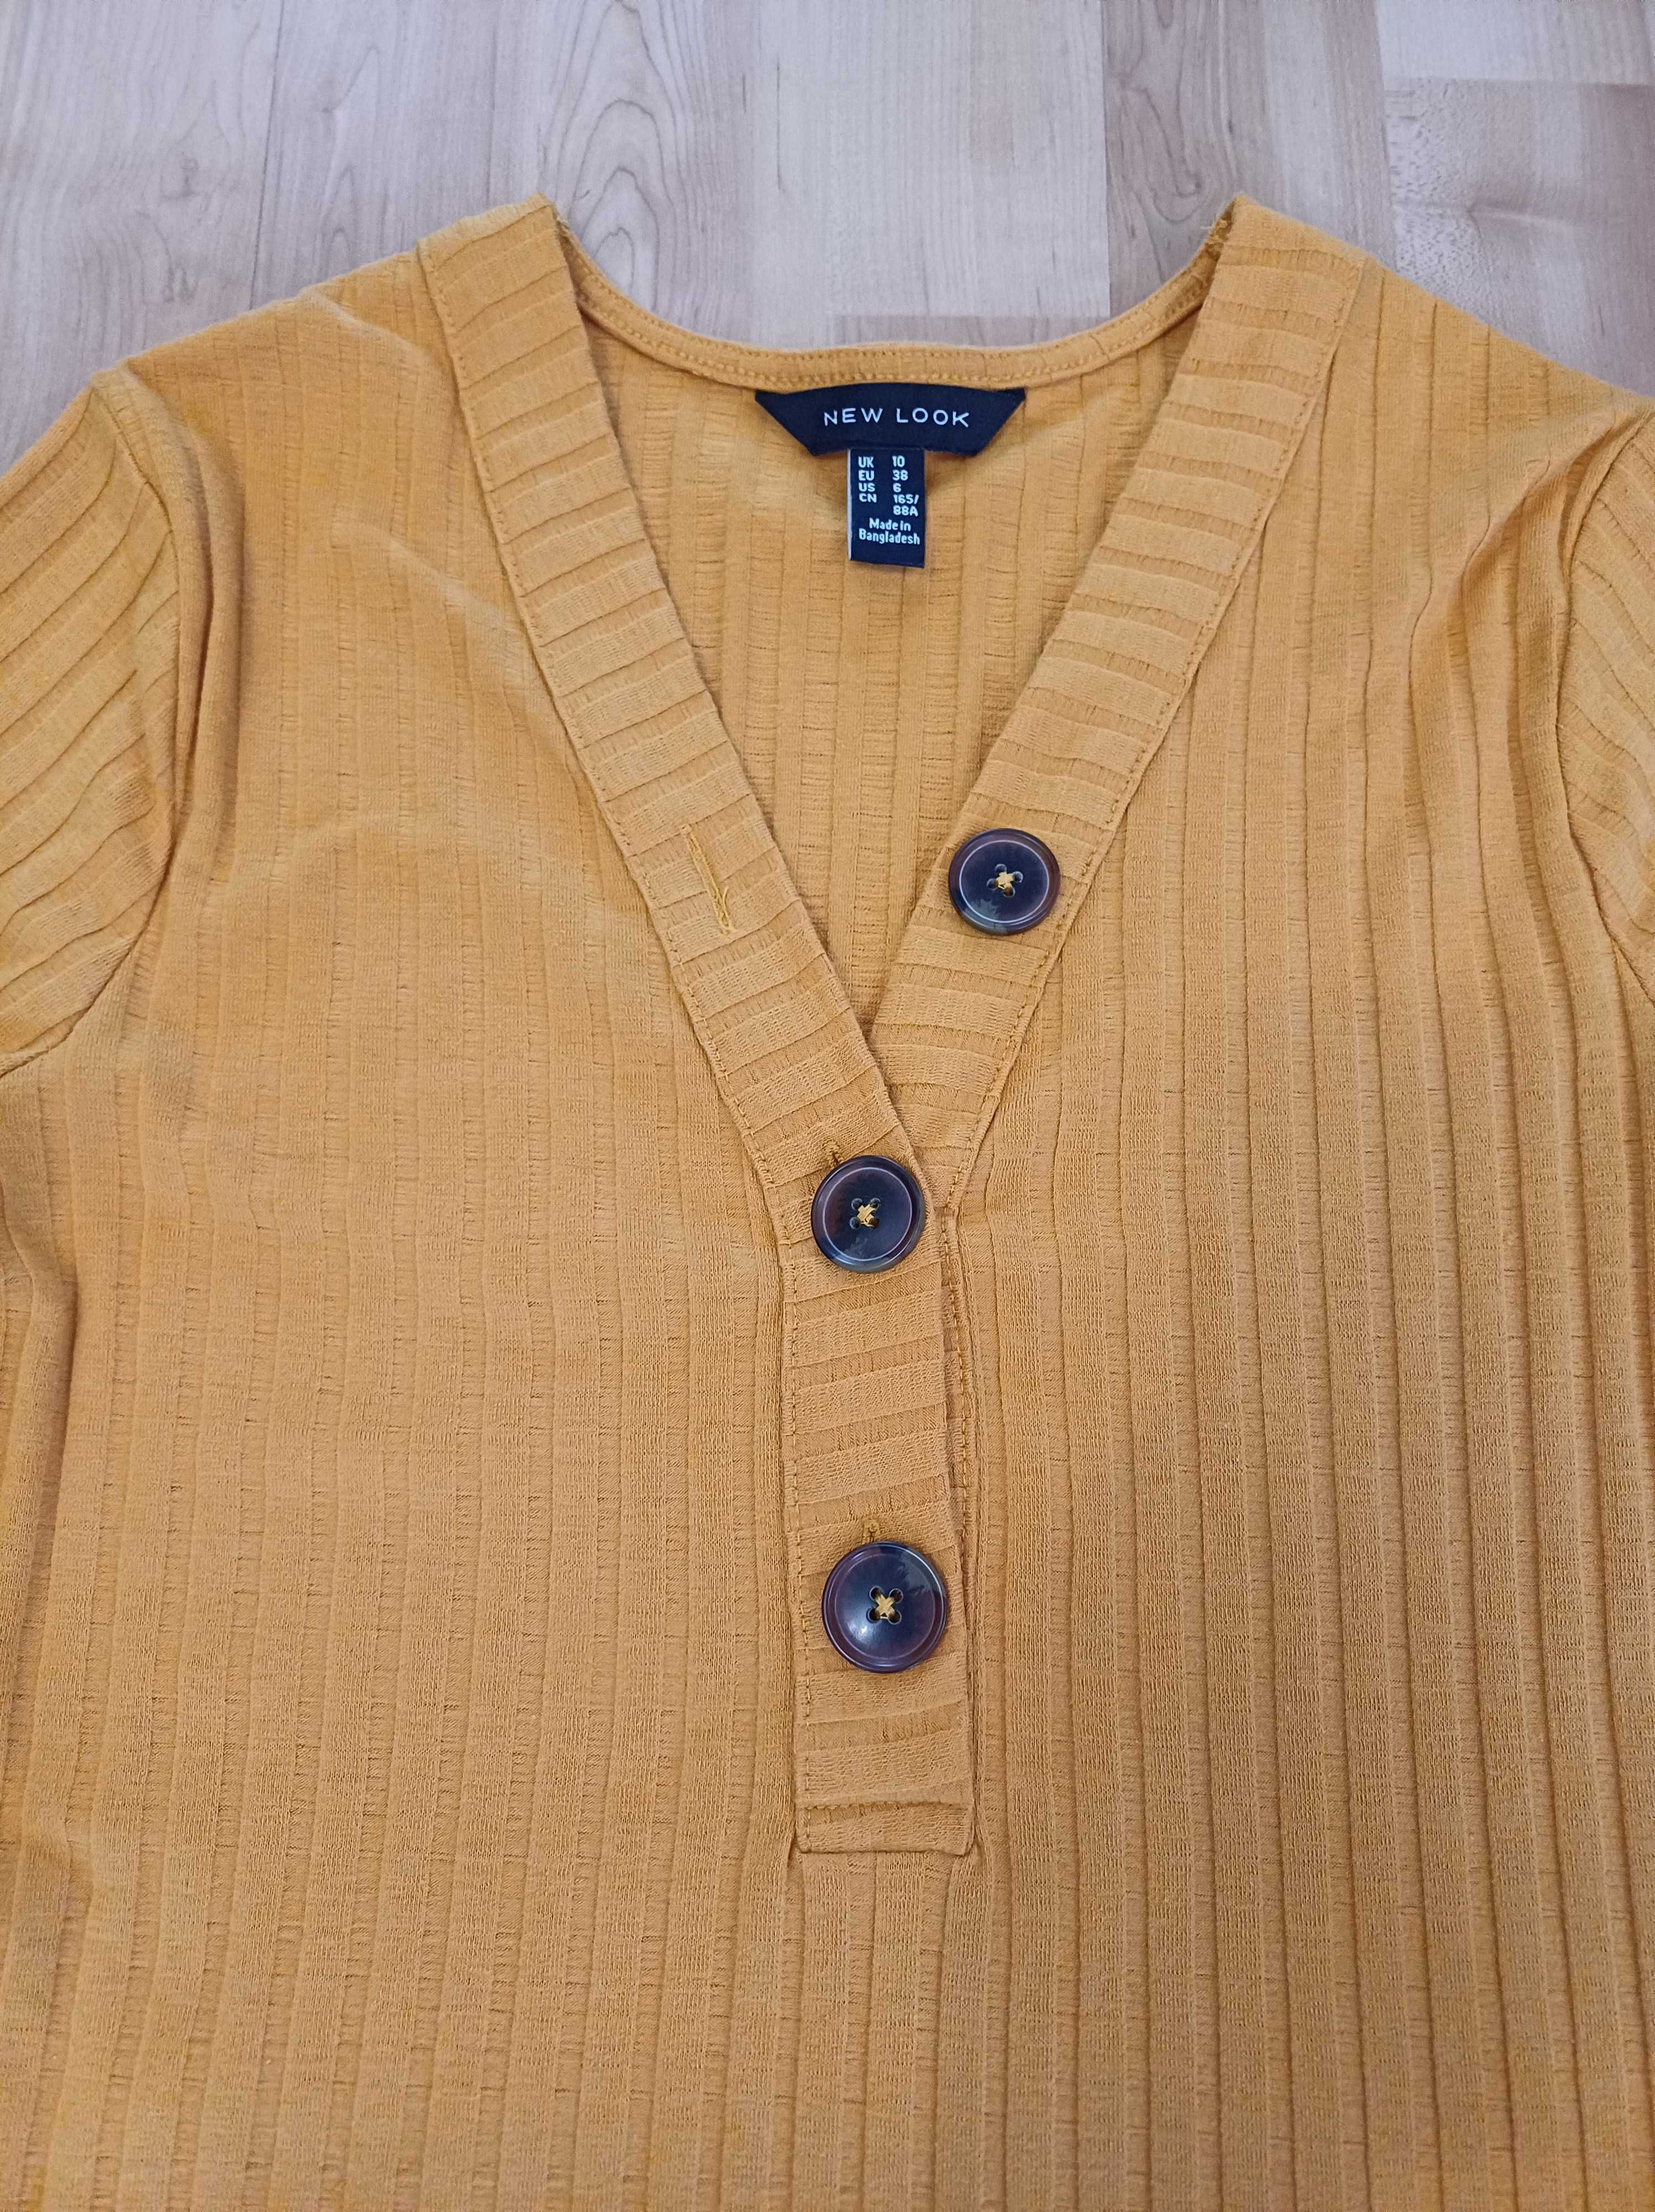 Bluzka damska sweterek żółta na długi rękawek w prążek New Look 38/M